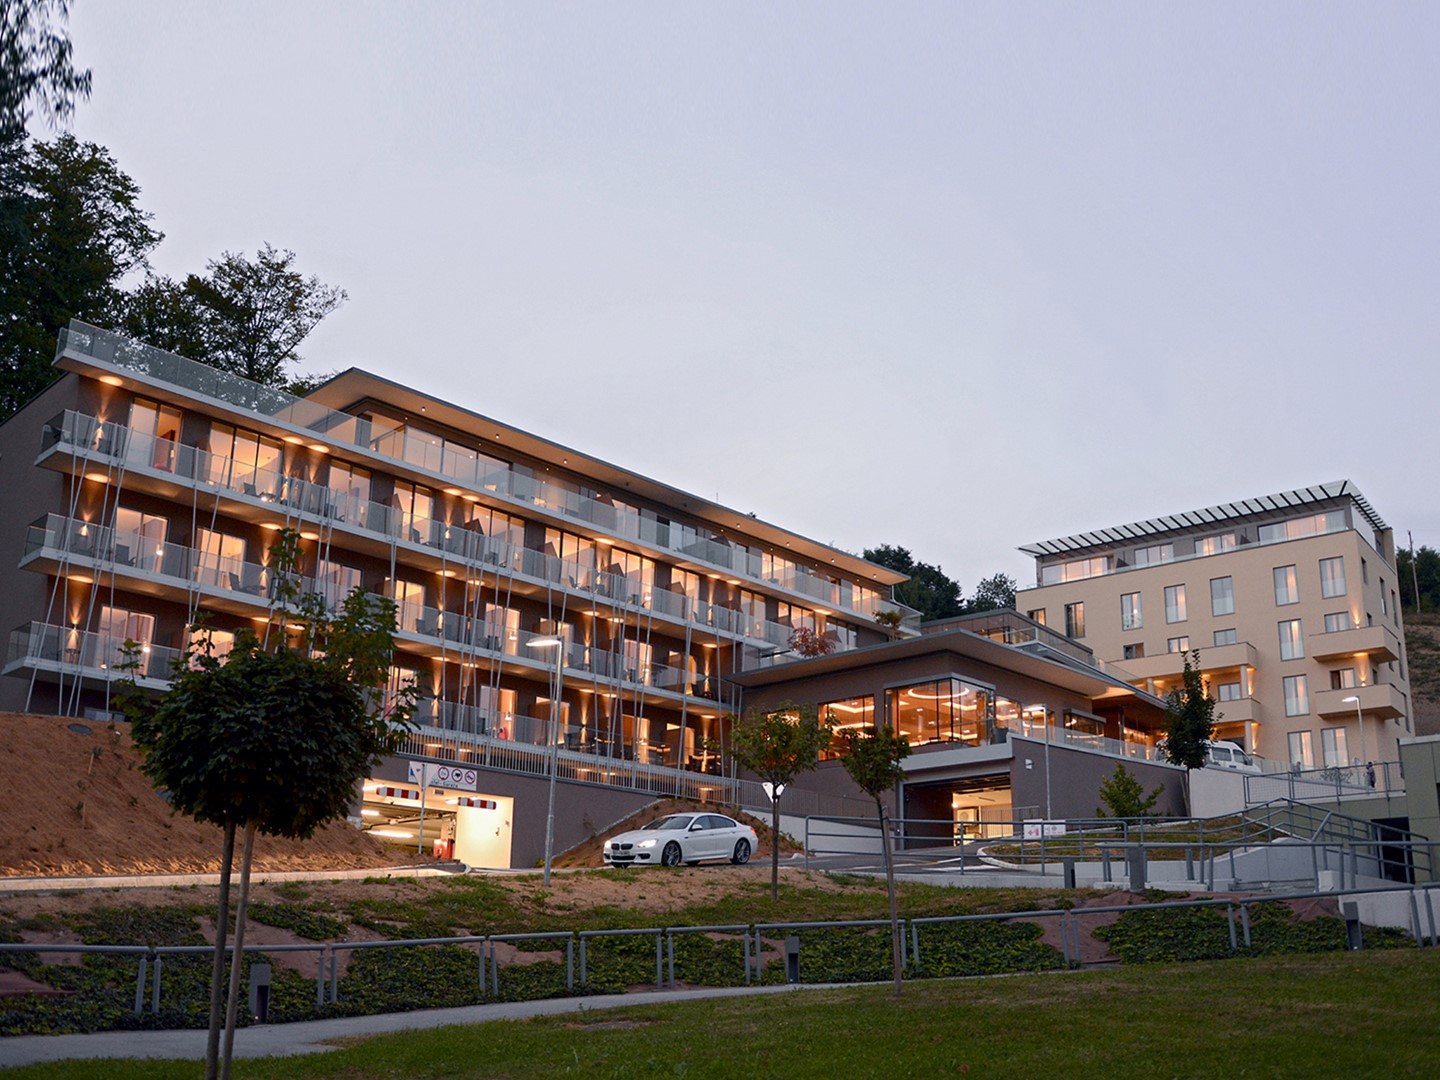 Atlantida Boutique Hotel Slovenia: la serie Quad veste gli ambienti bagno, le foto